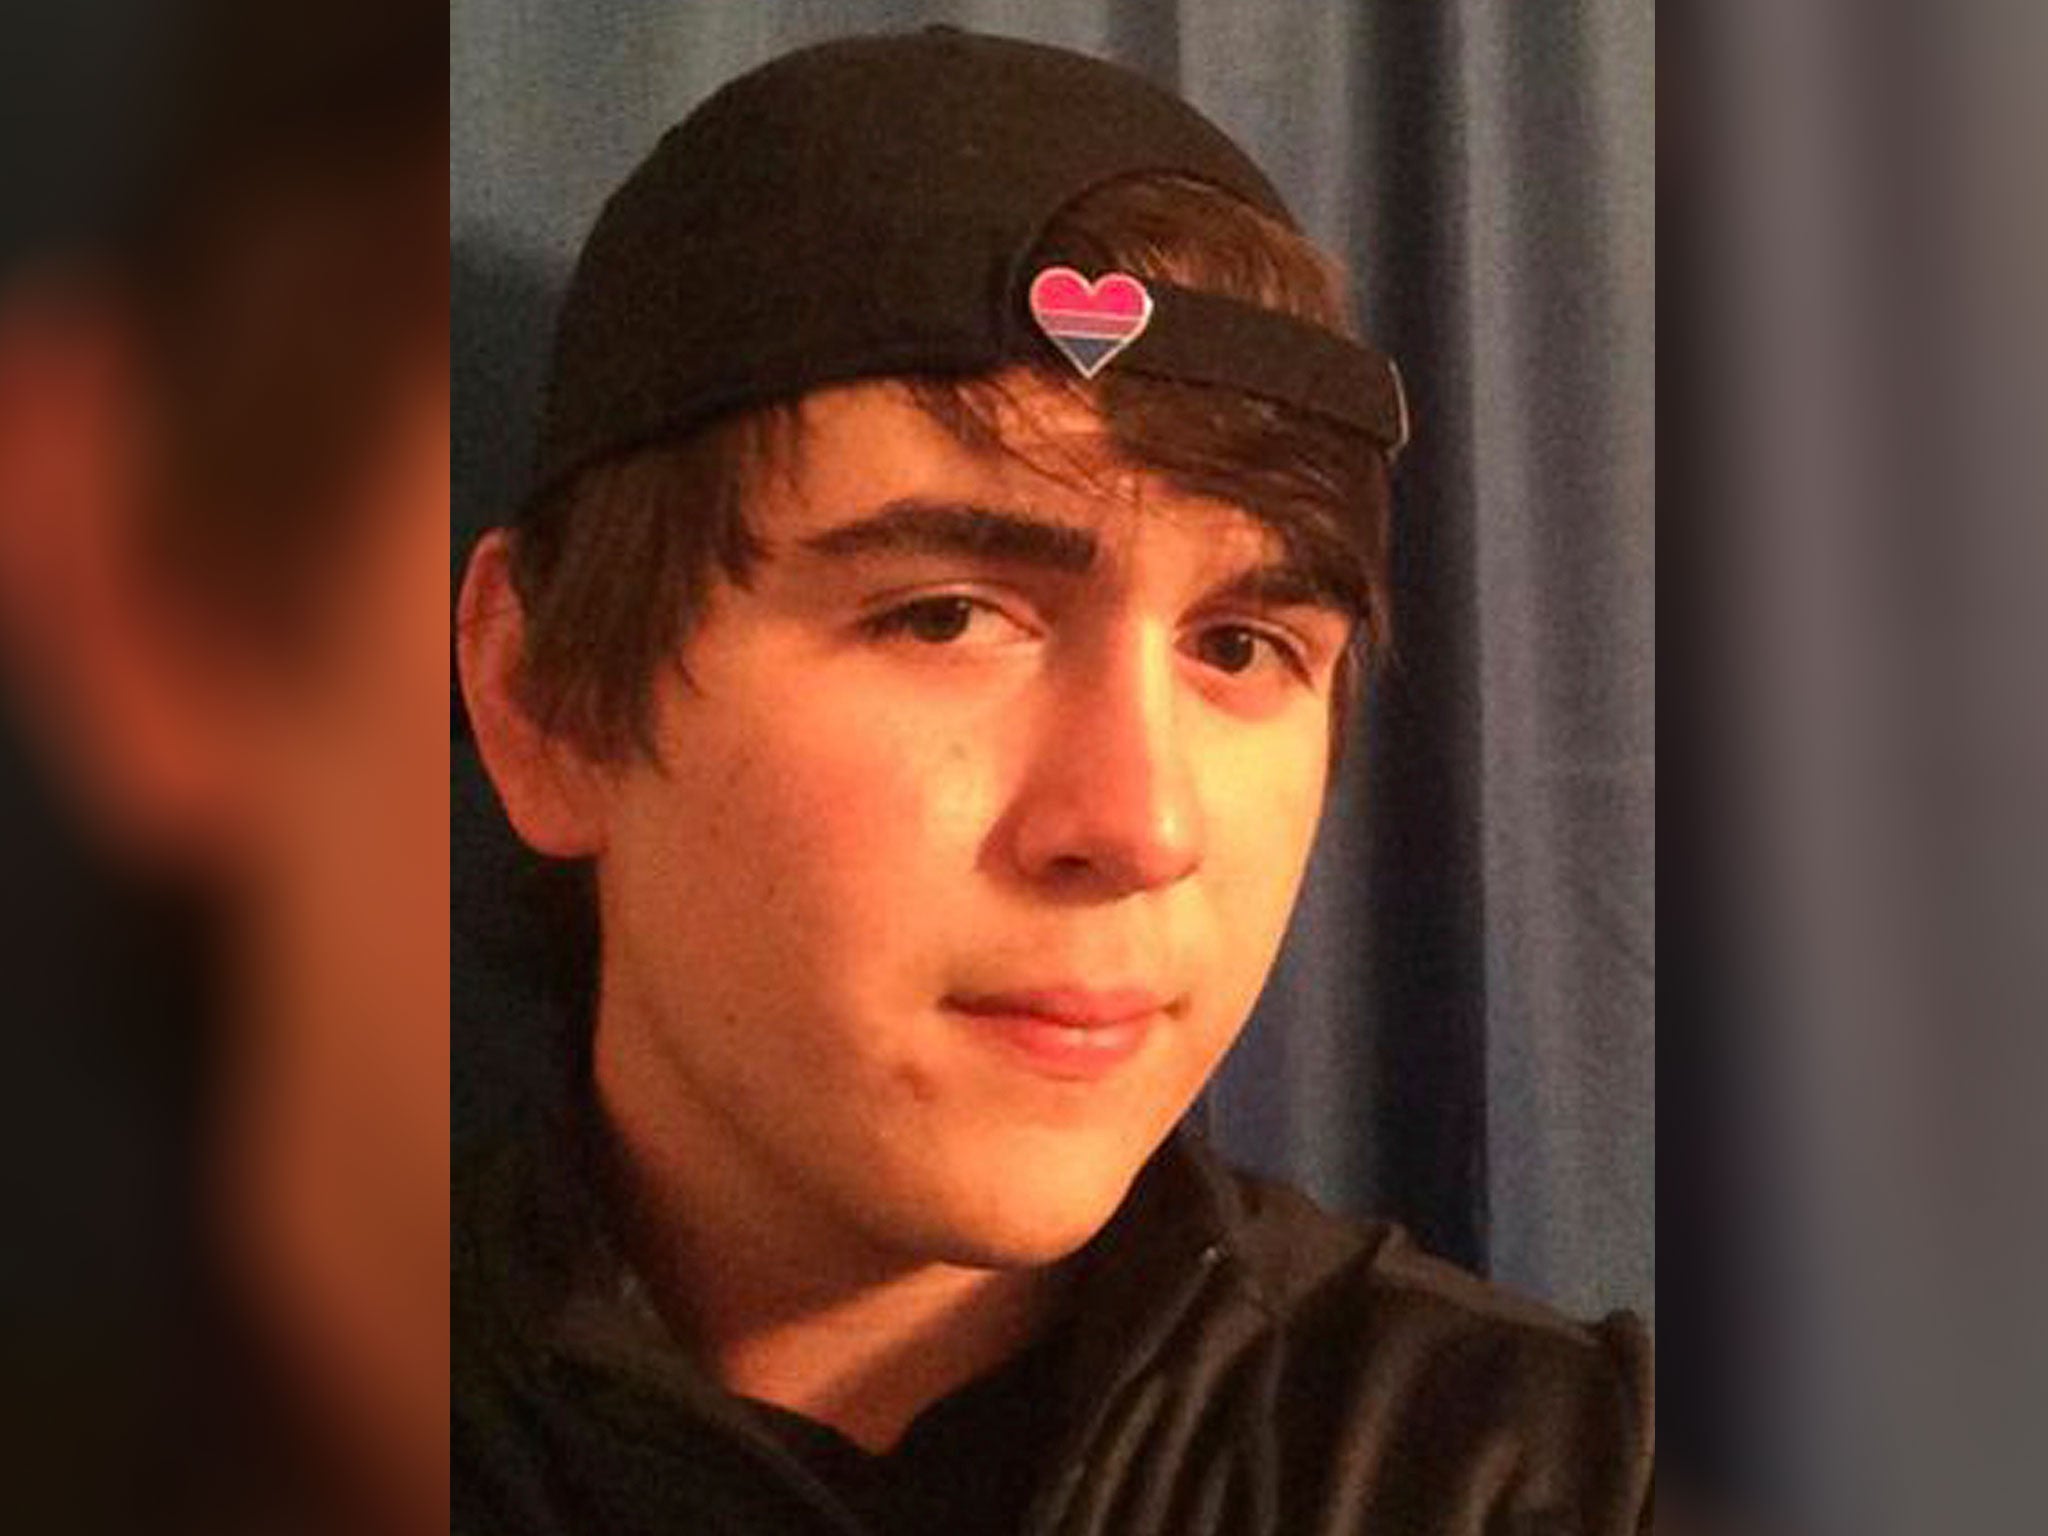 Texas school shooting: Dimitrios &apos;Dimitri&apos; Pagourtzis reportedly named as teenage suspect